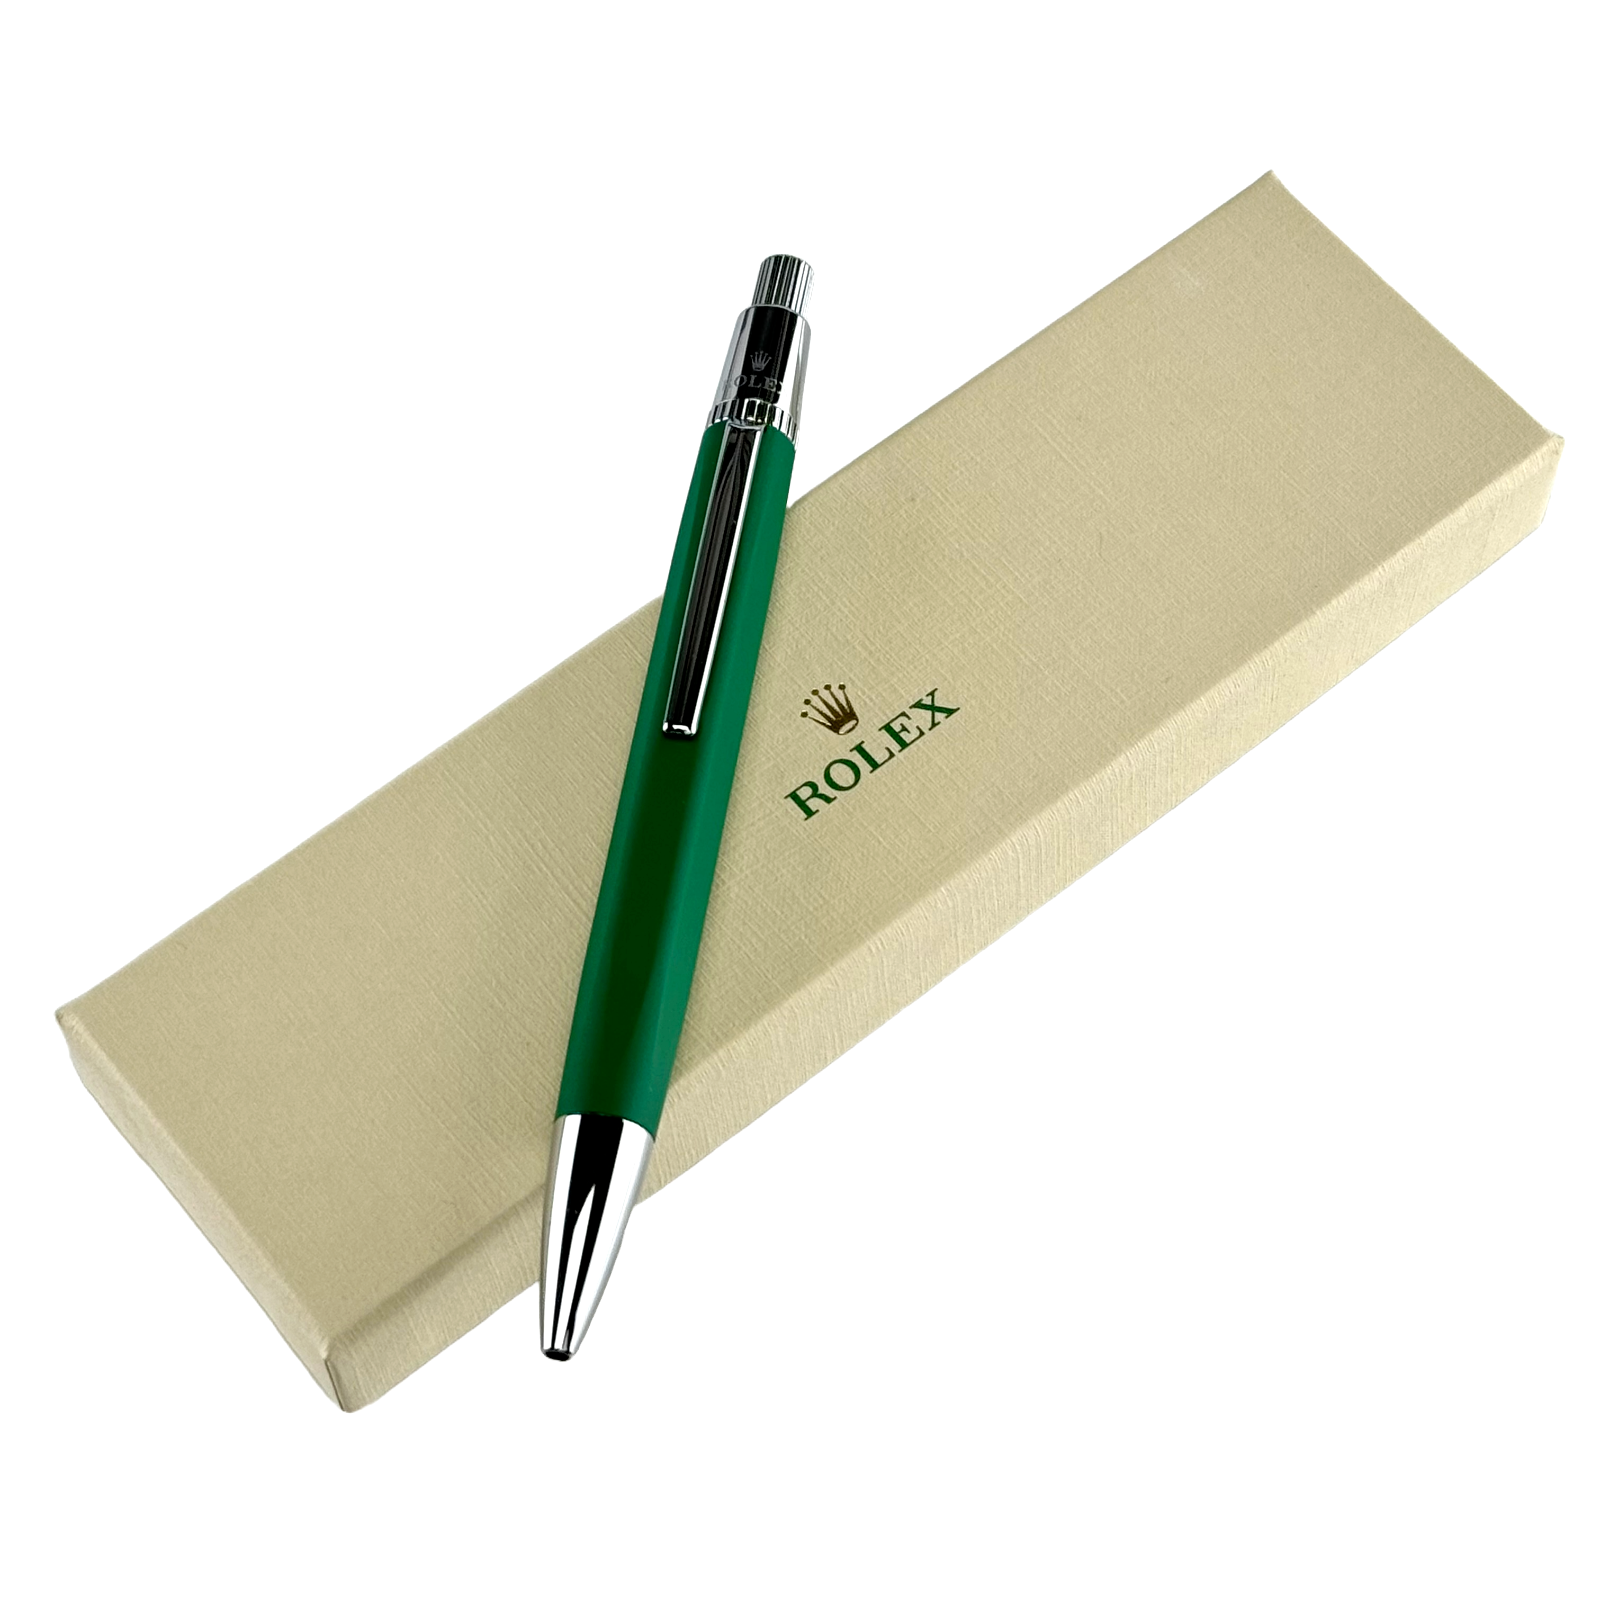 Rolex Kugelschreiber Kuli Stift ballpoint pen Grün green *UNBENUTZT UNUSED*